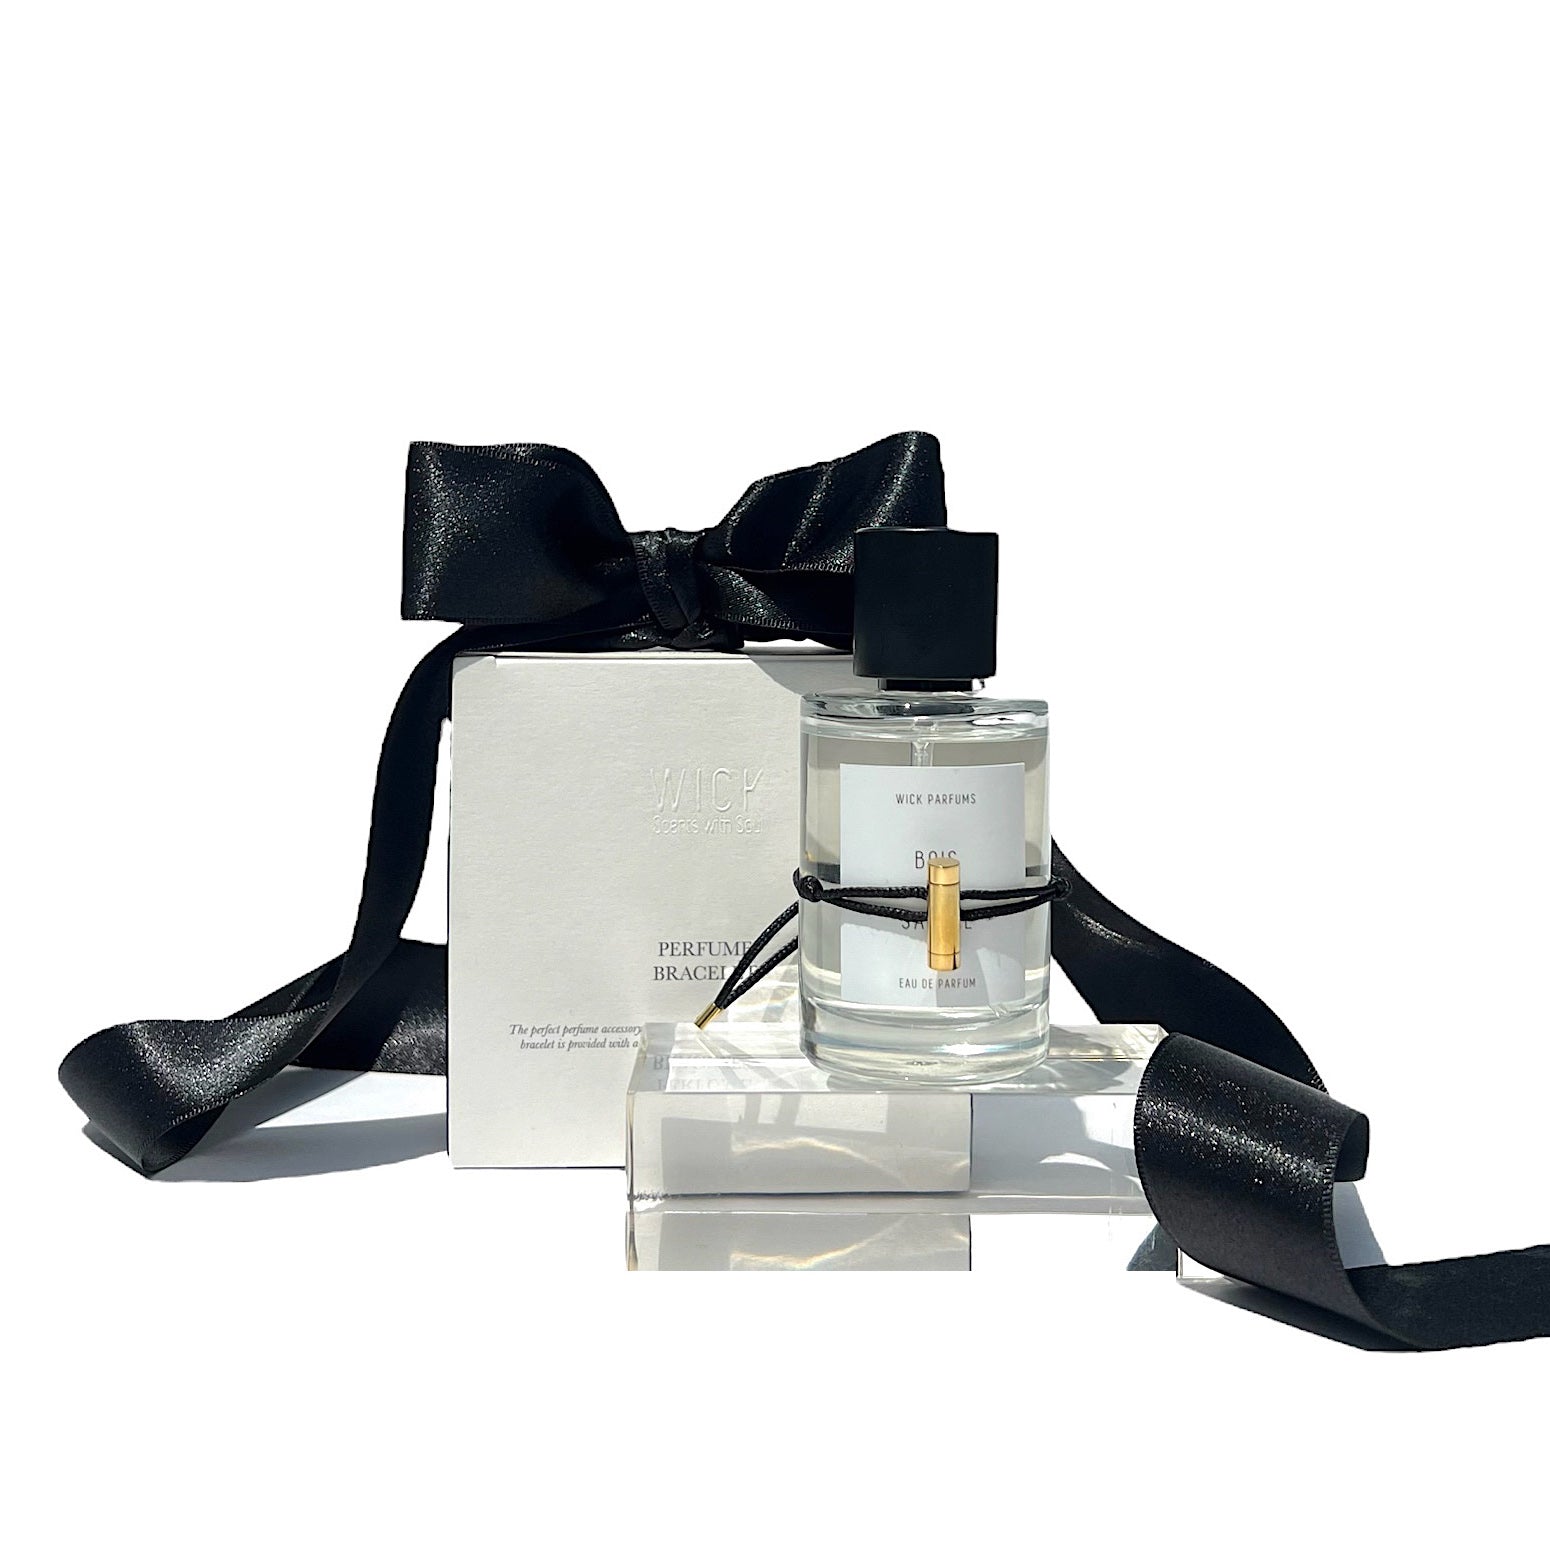 Stunning Aroma Perfume Tree of Life Bracelet | Fashion Reflection